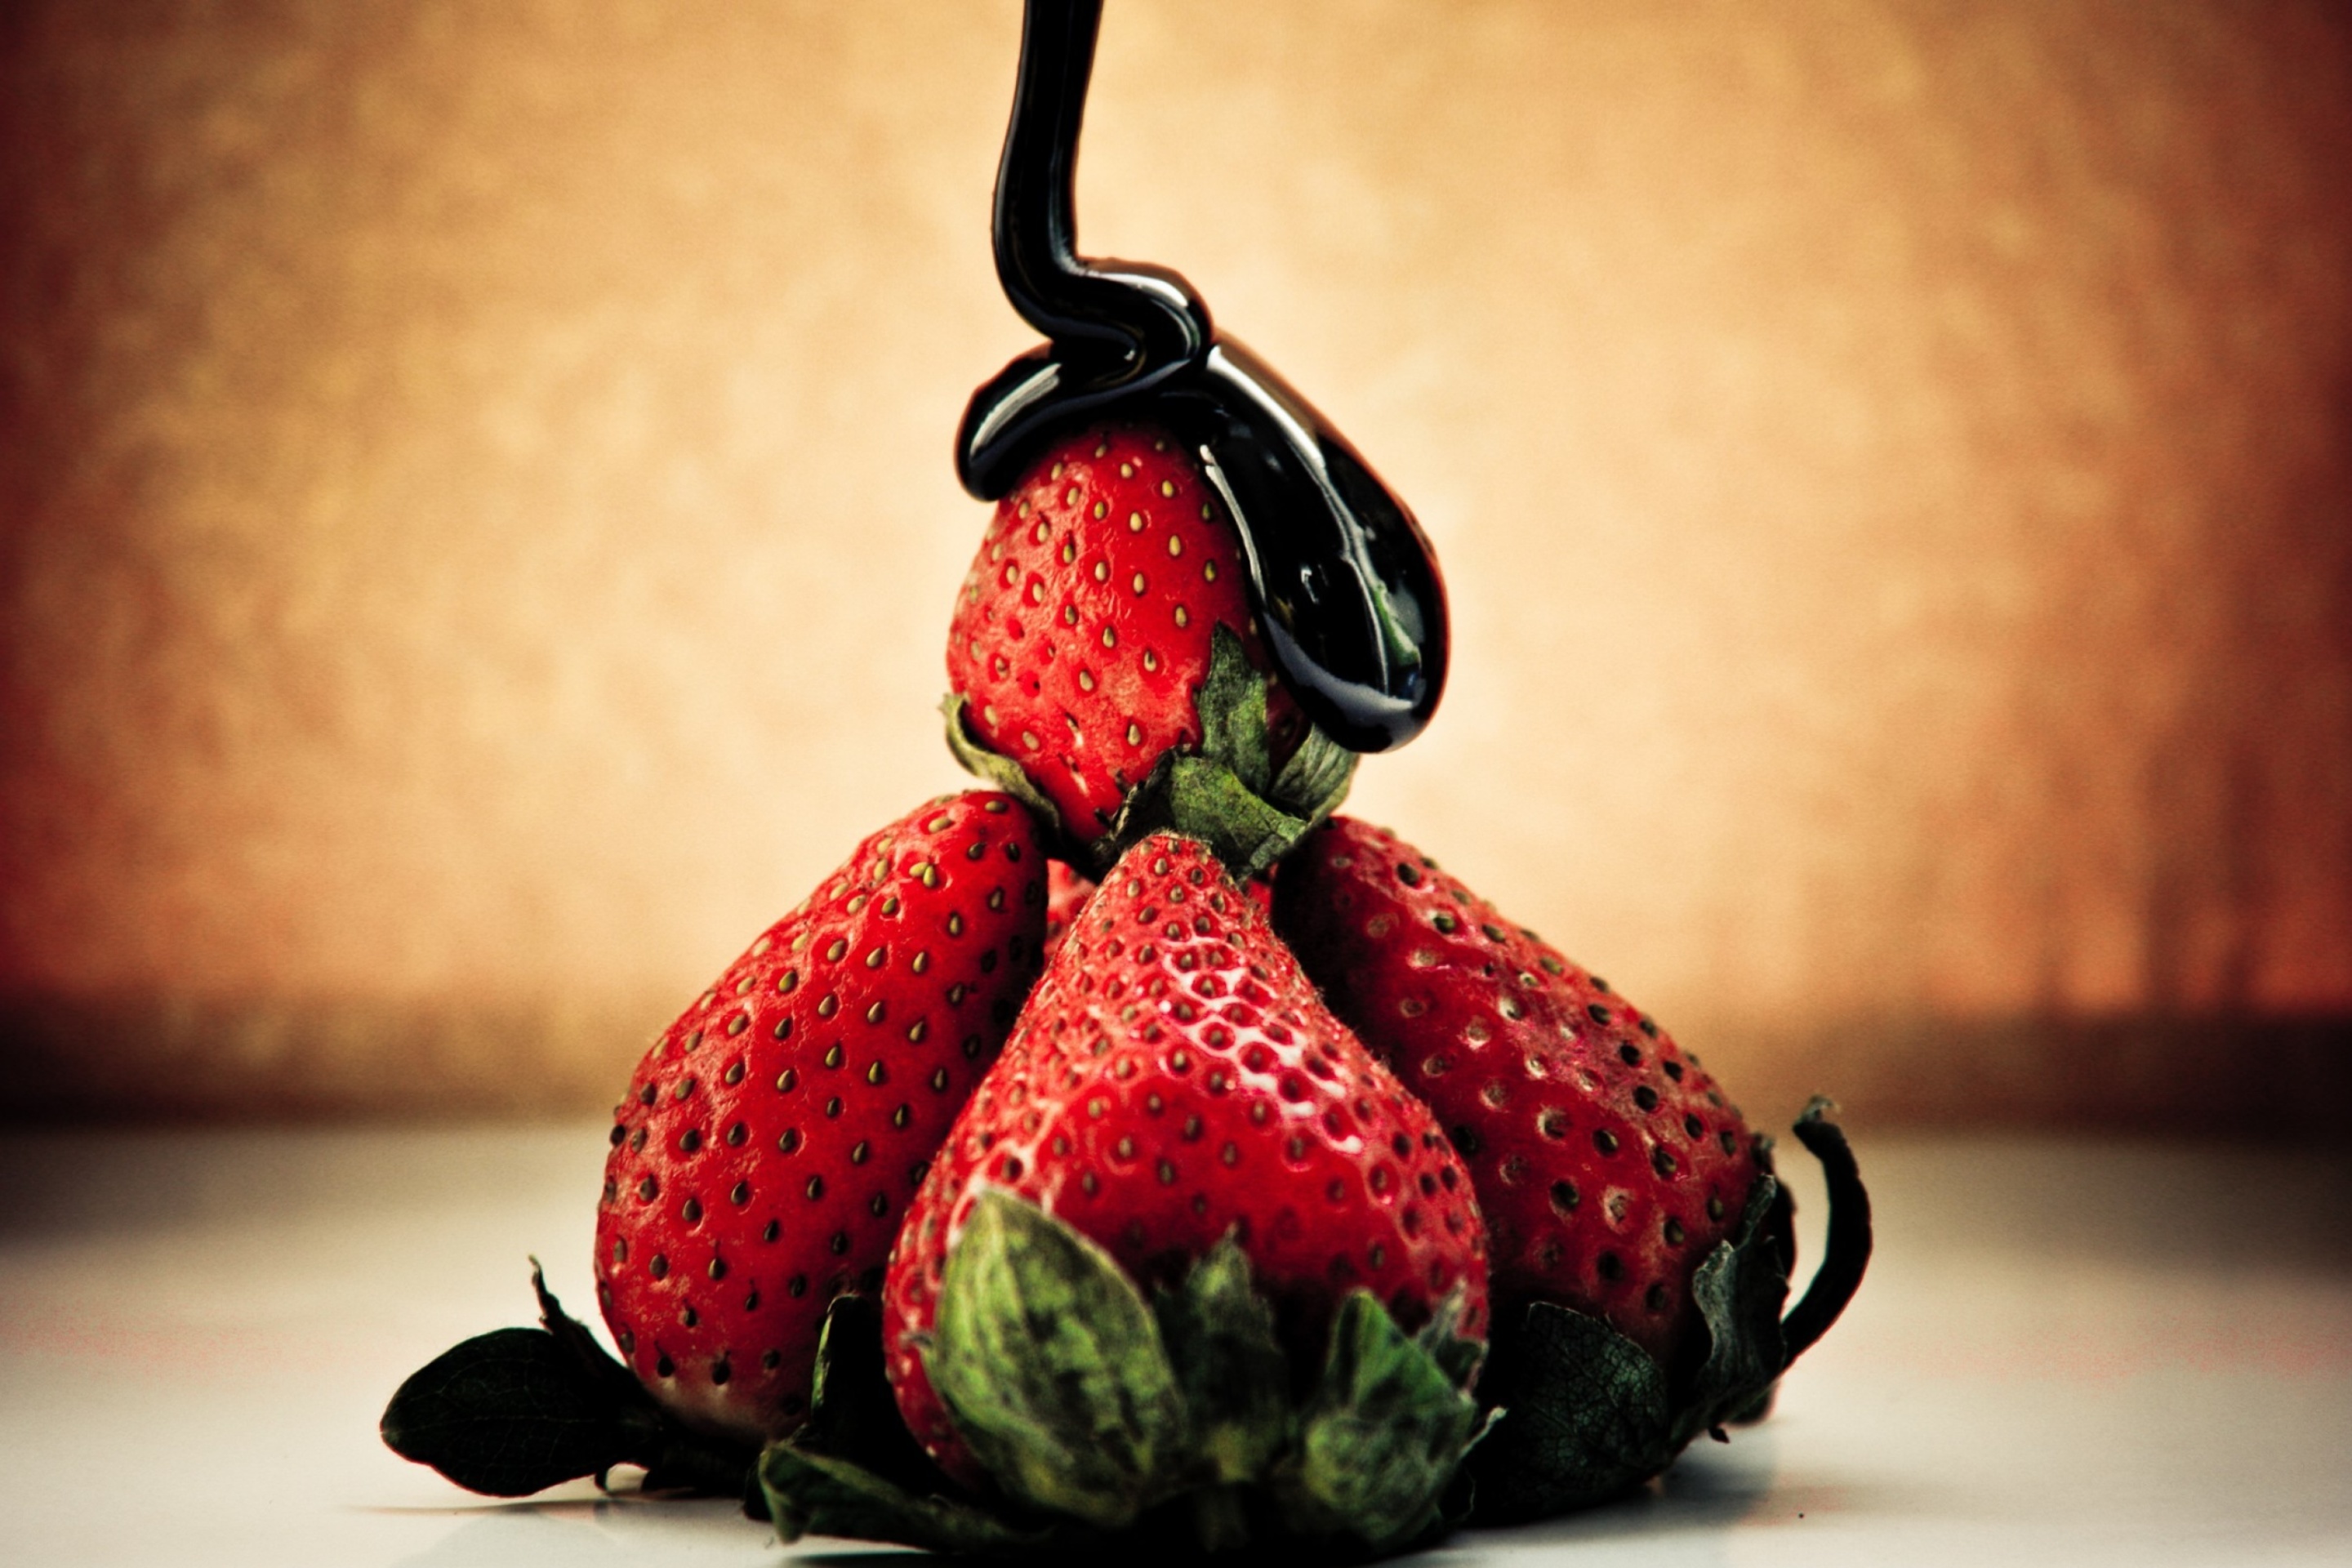 Strawberries with chocolate screenshot #1 2880x1920